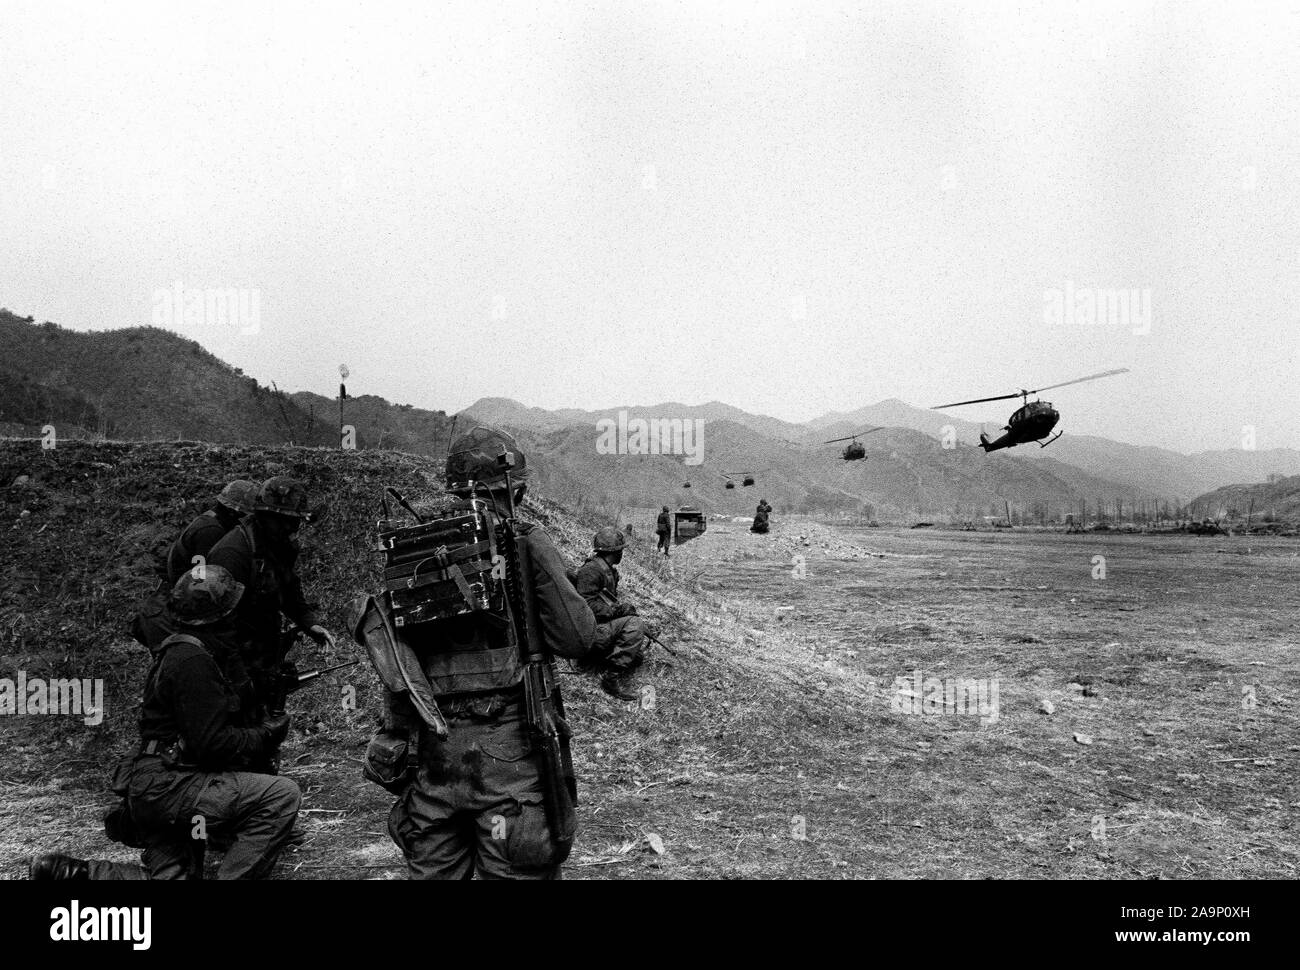 Des troupes d'infanterie du 1er Bataillon, 21ème Inf., 25th Inf. Div., frapper le mock-up composé de la Corée du Nord dans la zone d'entraînement des forces spéciales de l'armée au cours d'un assaut héliporté à l'aide d'hélicoptères UH-1 Iroquois. Les soldats participent à l'exercice d'entraînement aux États-Unis Corée/Team Spirit 82. Banque D'Images